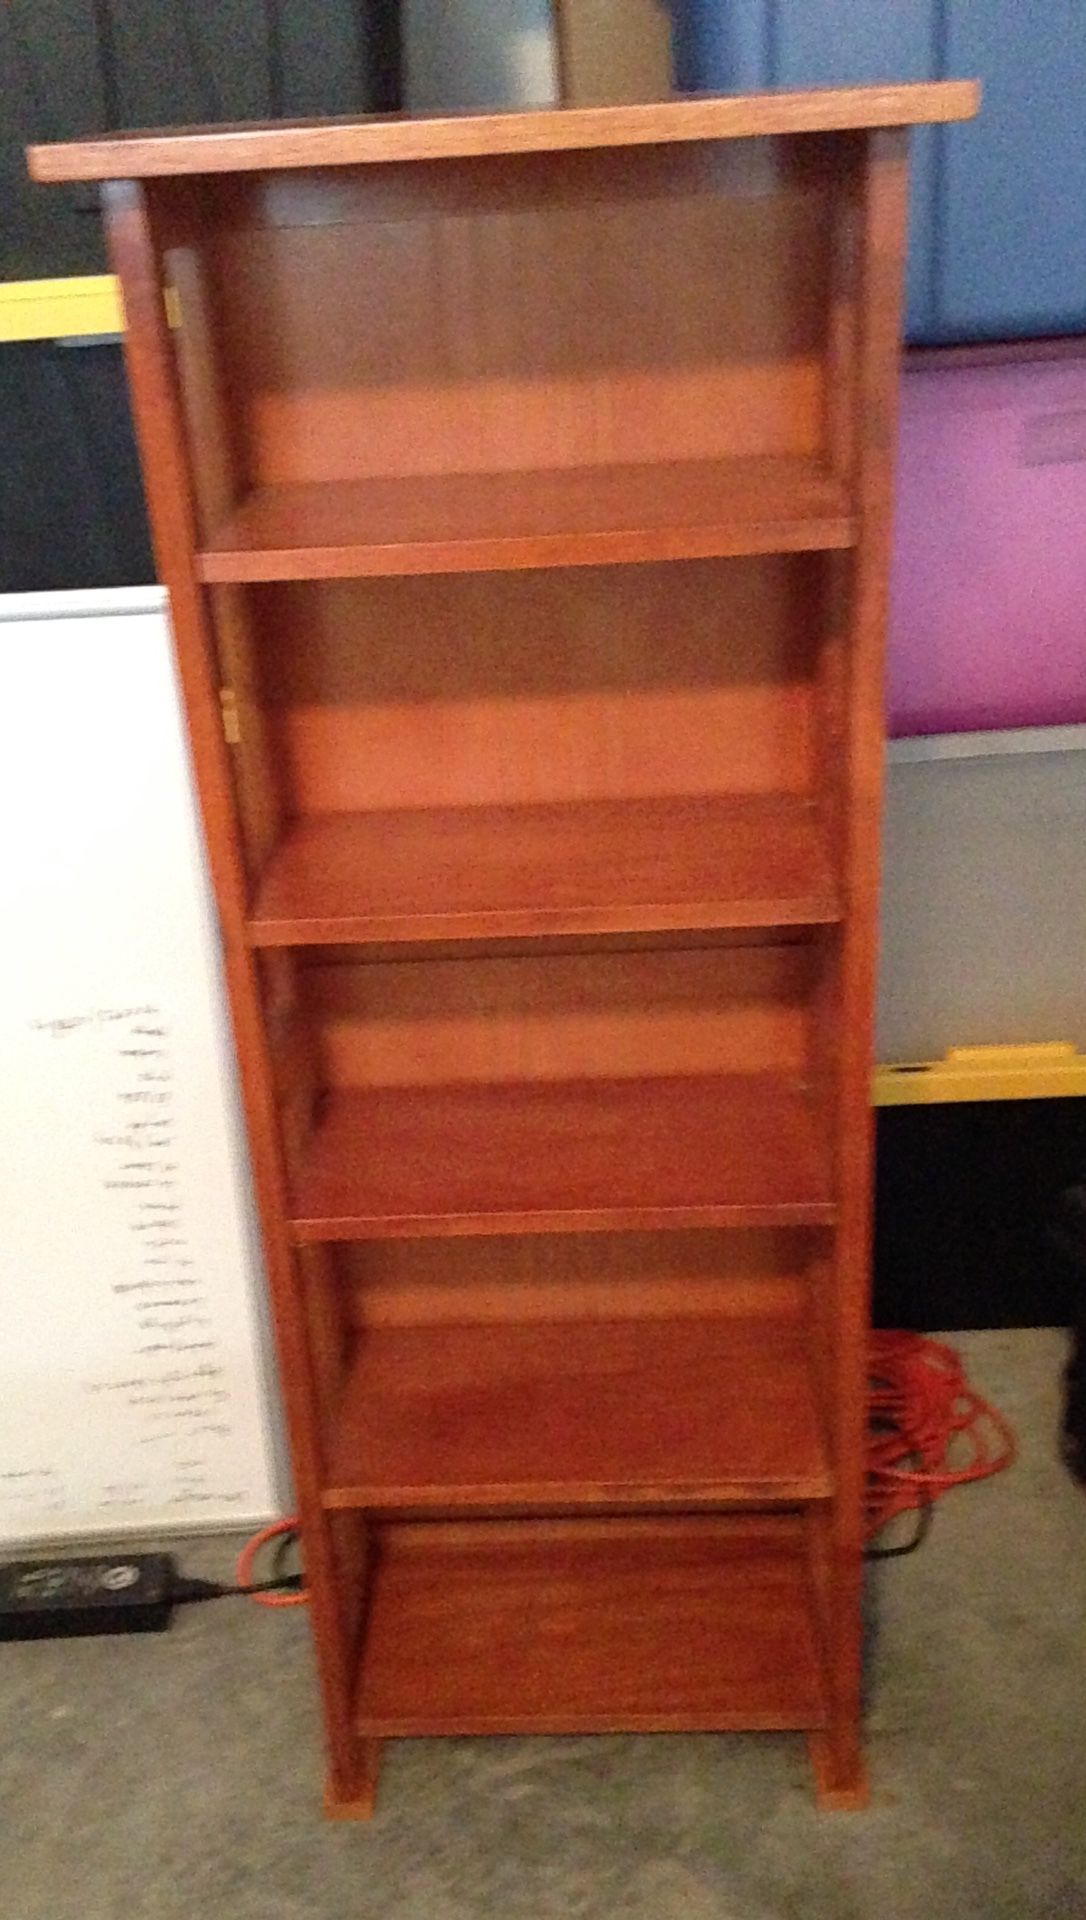 Small curio shelf